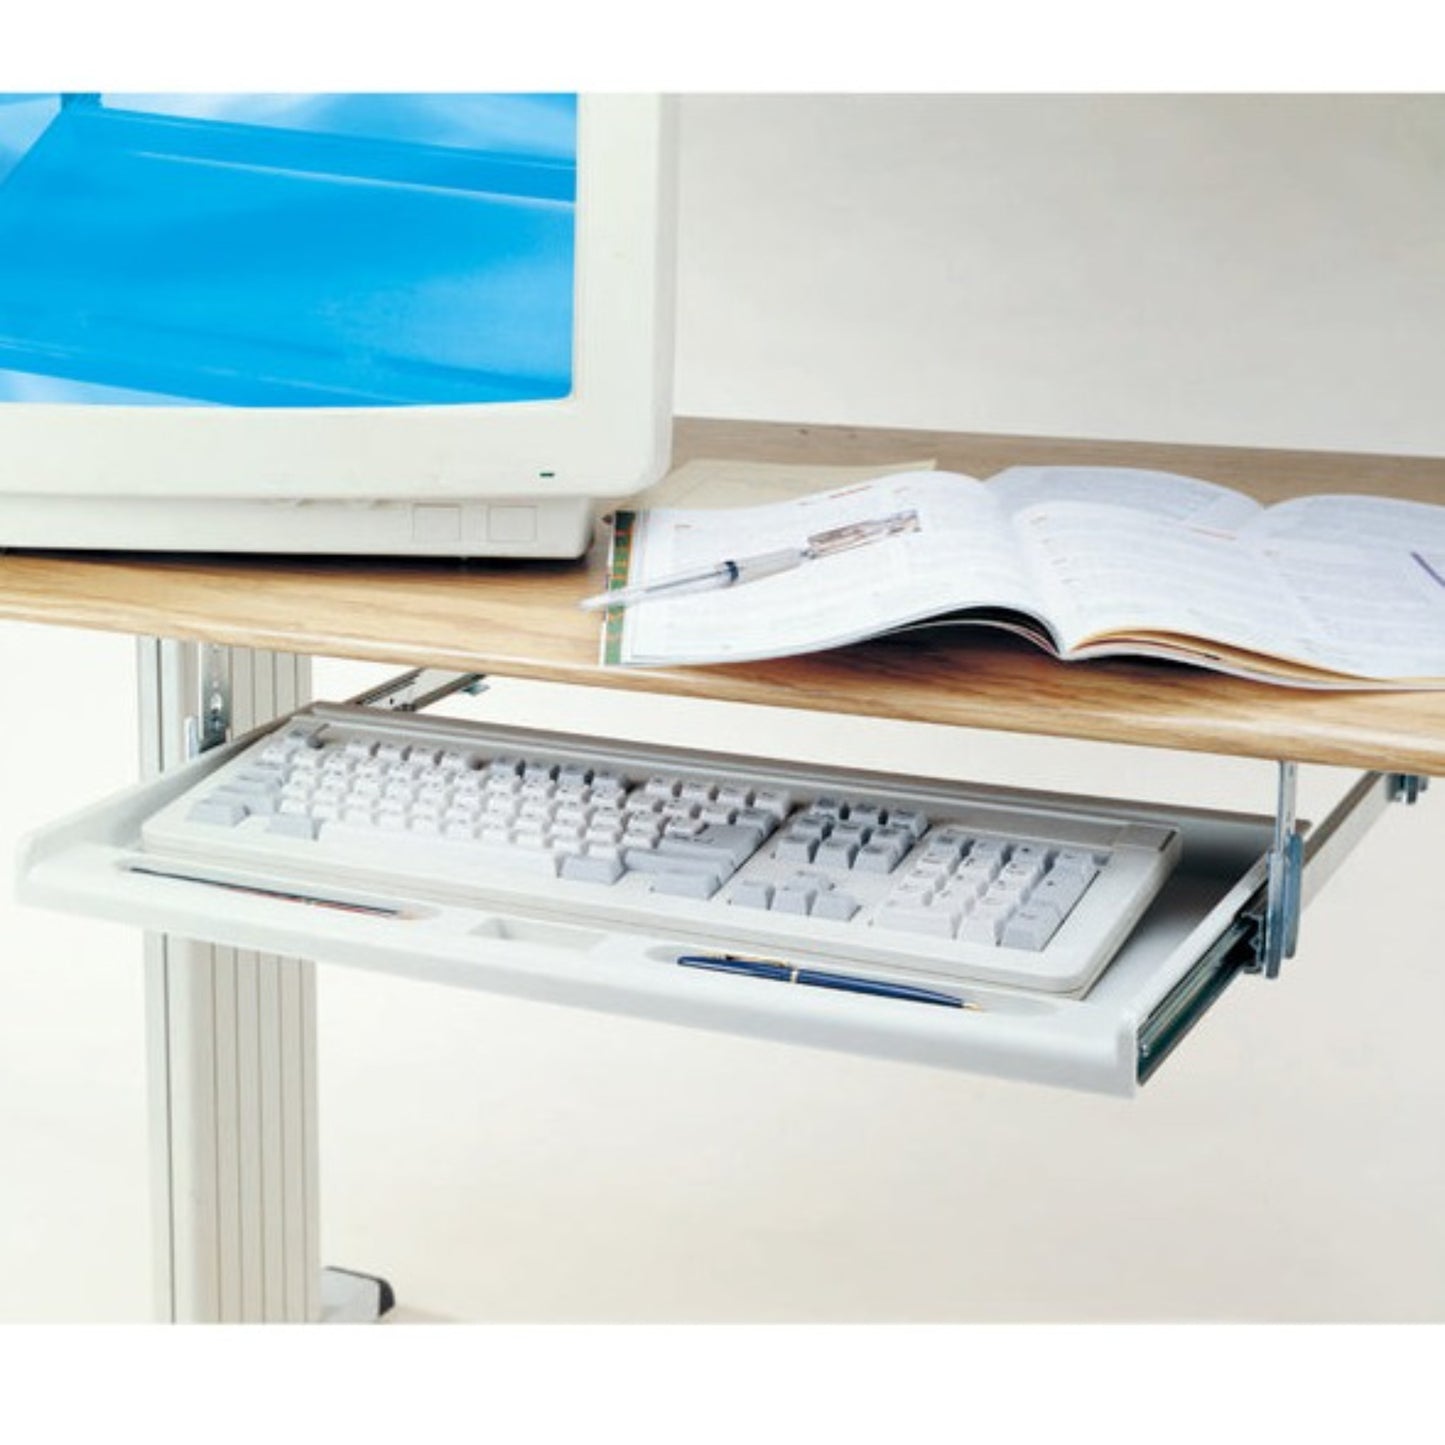 Standard Under Desk Keyboard Tray